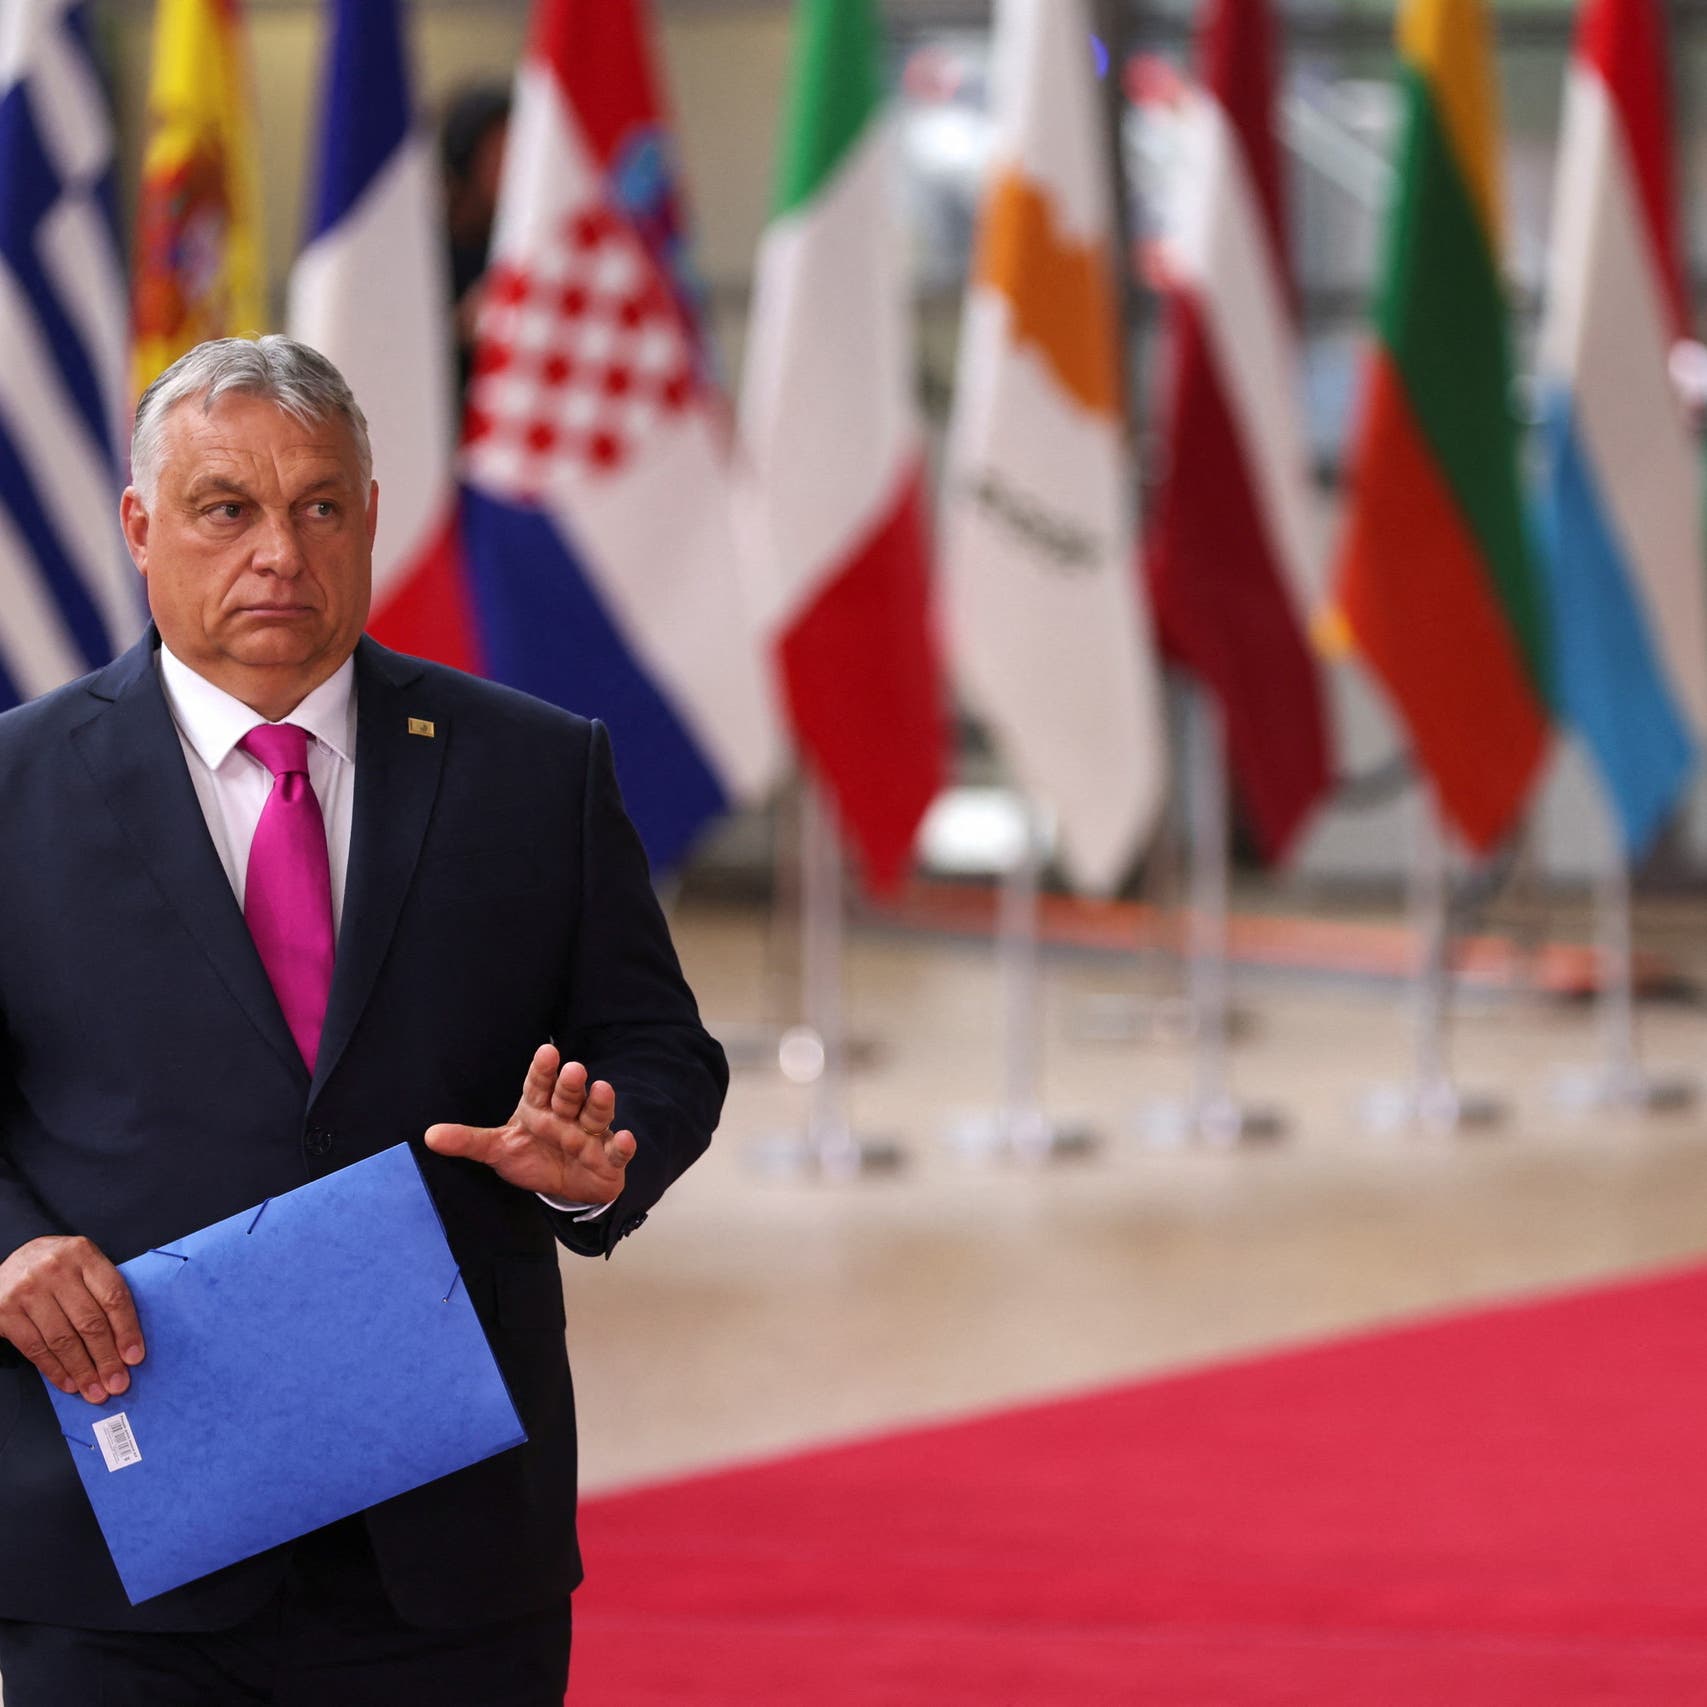 المجر: "لا تسوية" مقبولة حالياً بشأن حظر النفط الروسي